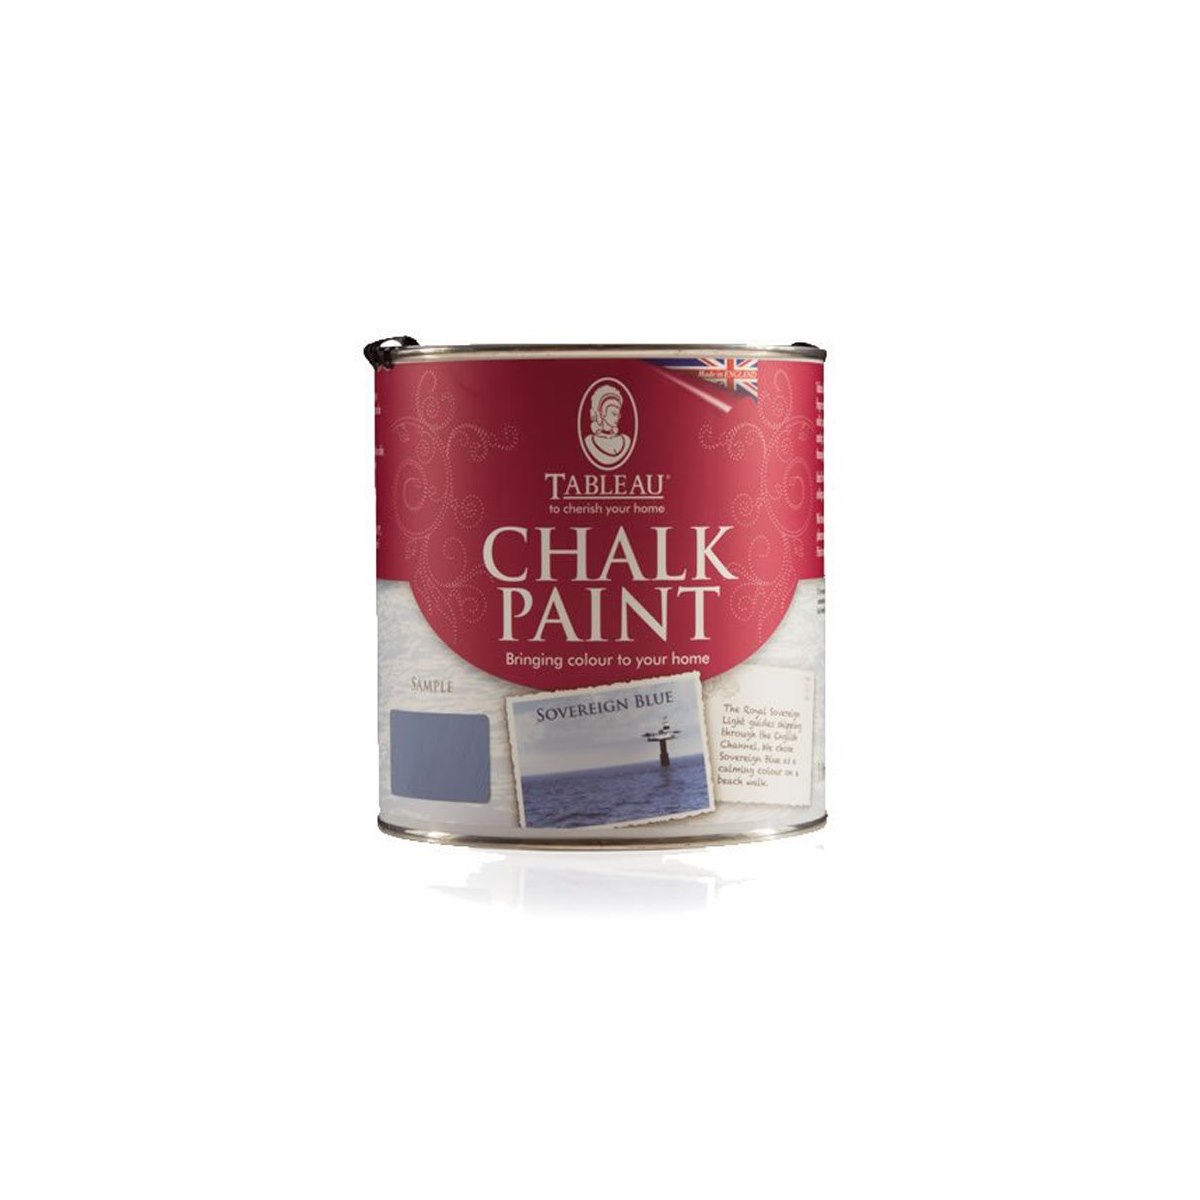 Tableau Chalk Paint Sovereign Blue 1 Litre